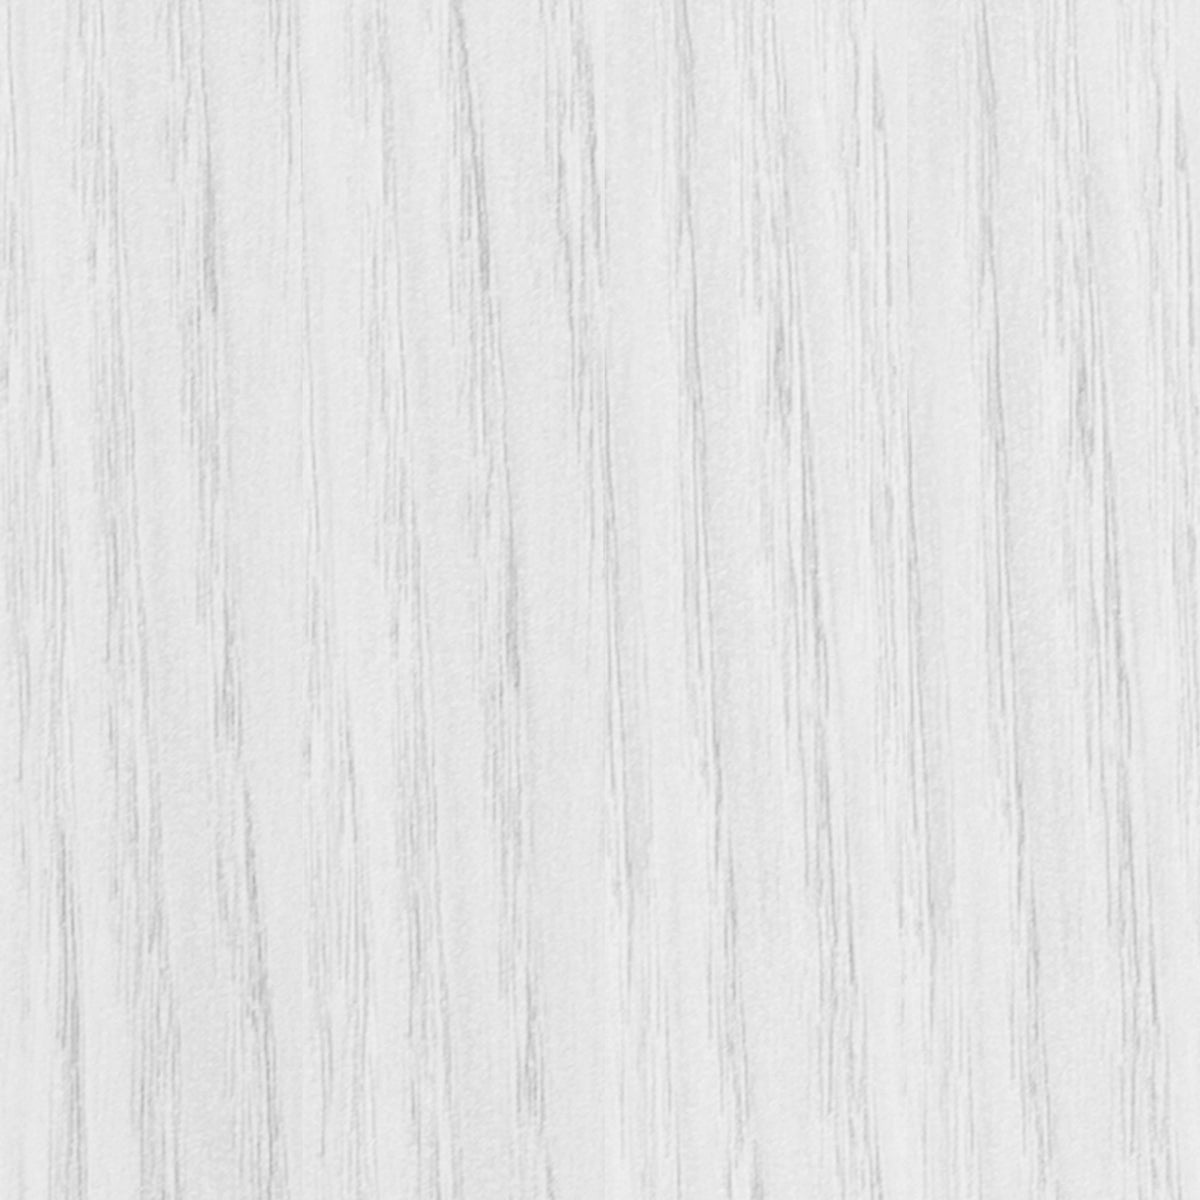 White Woodgrain |#| Dry Erase Magnetic Weekly Calendar/Chalk Board - White Woodgrain Frame - 24x18